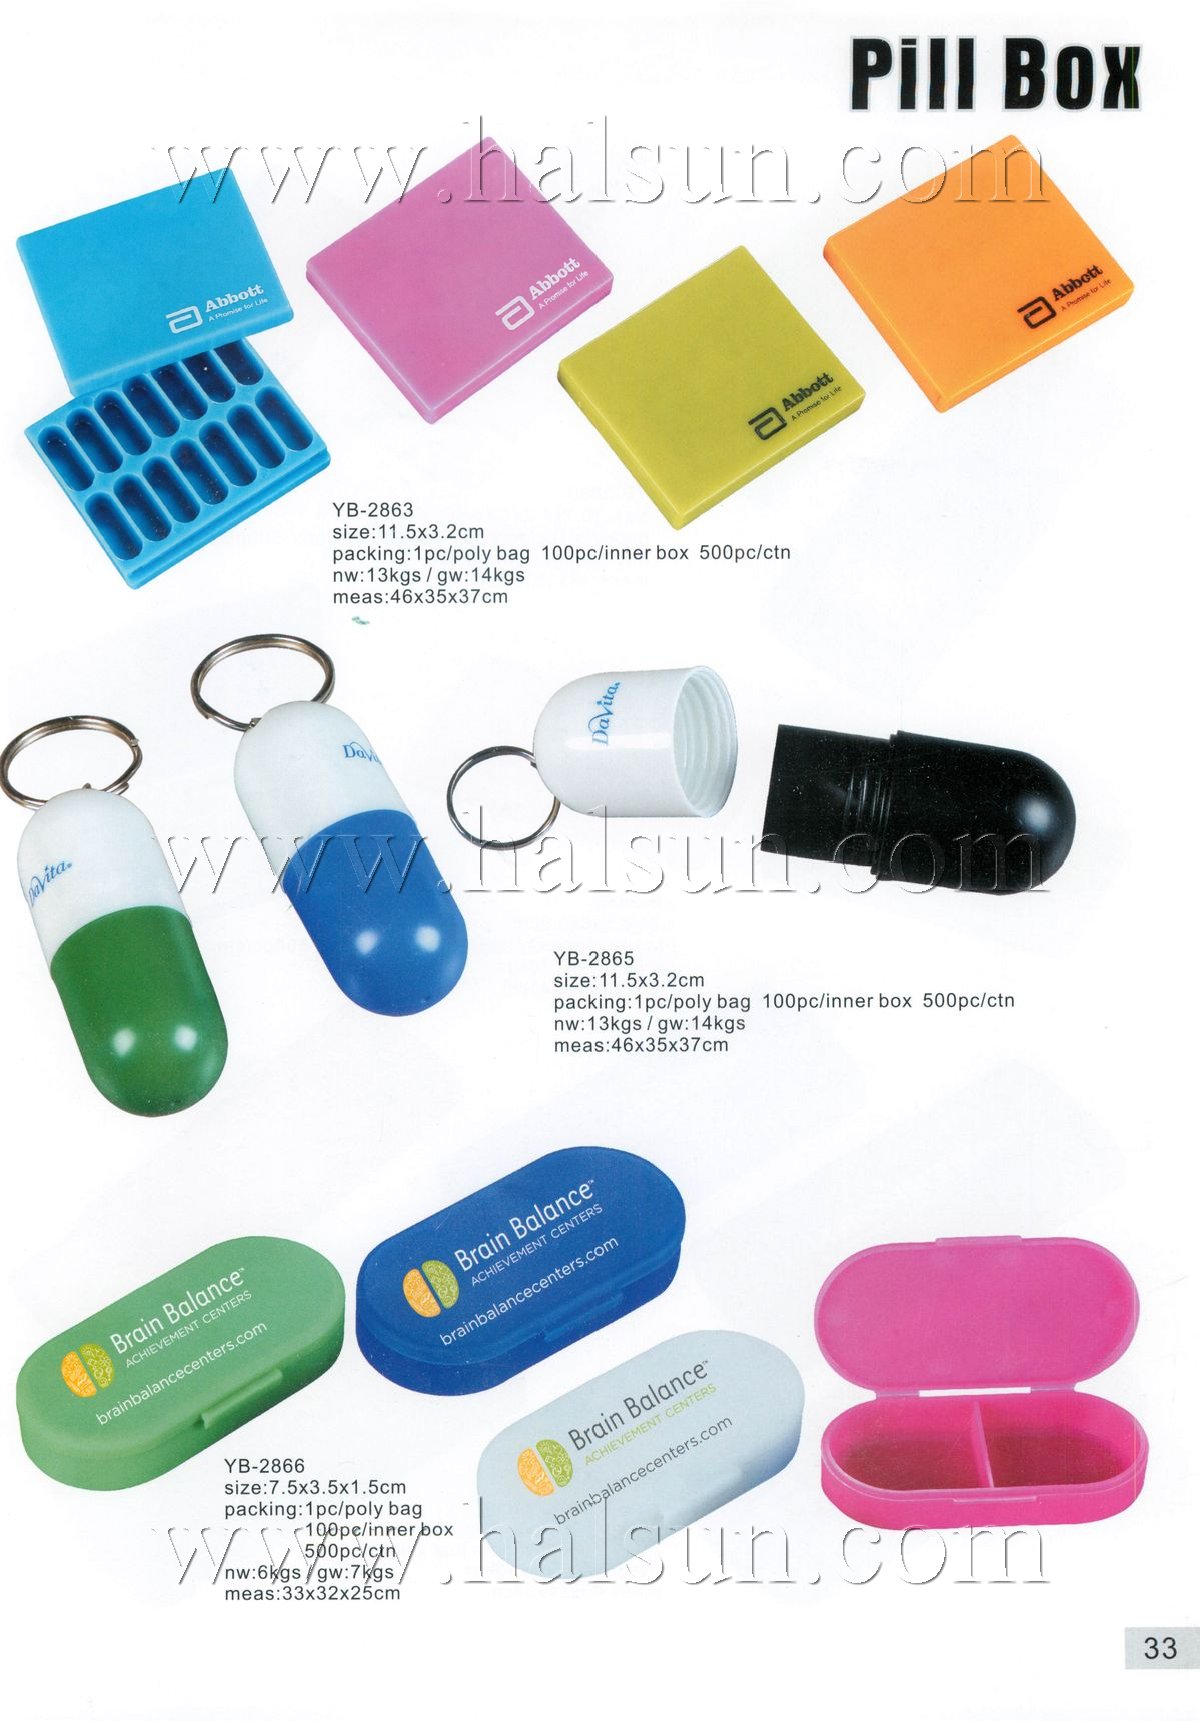 Custom Pill Boxes,YB-2863,YB-2865,YB-2866